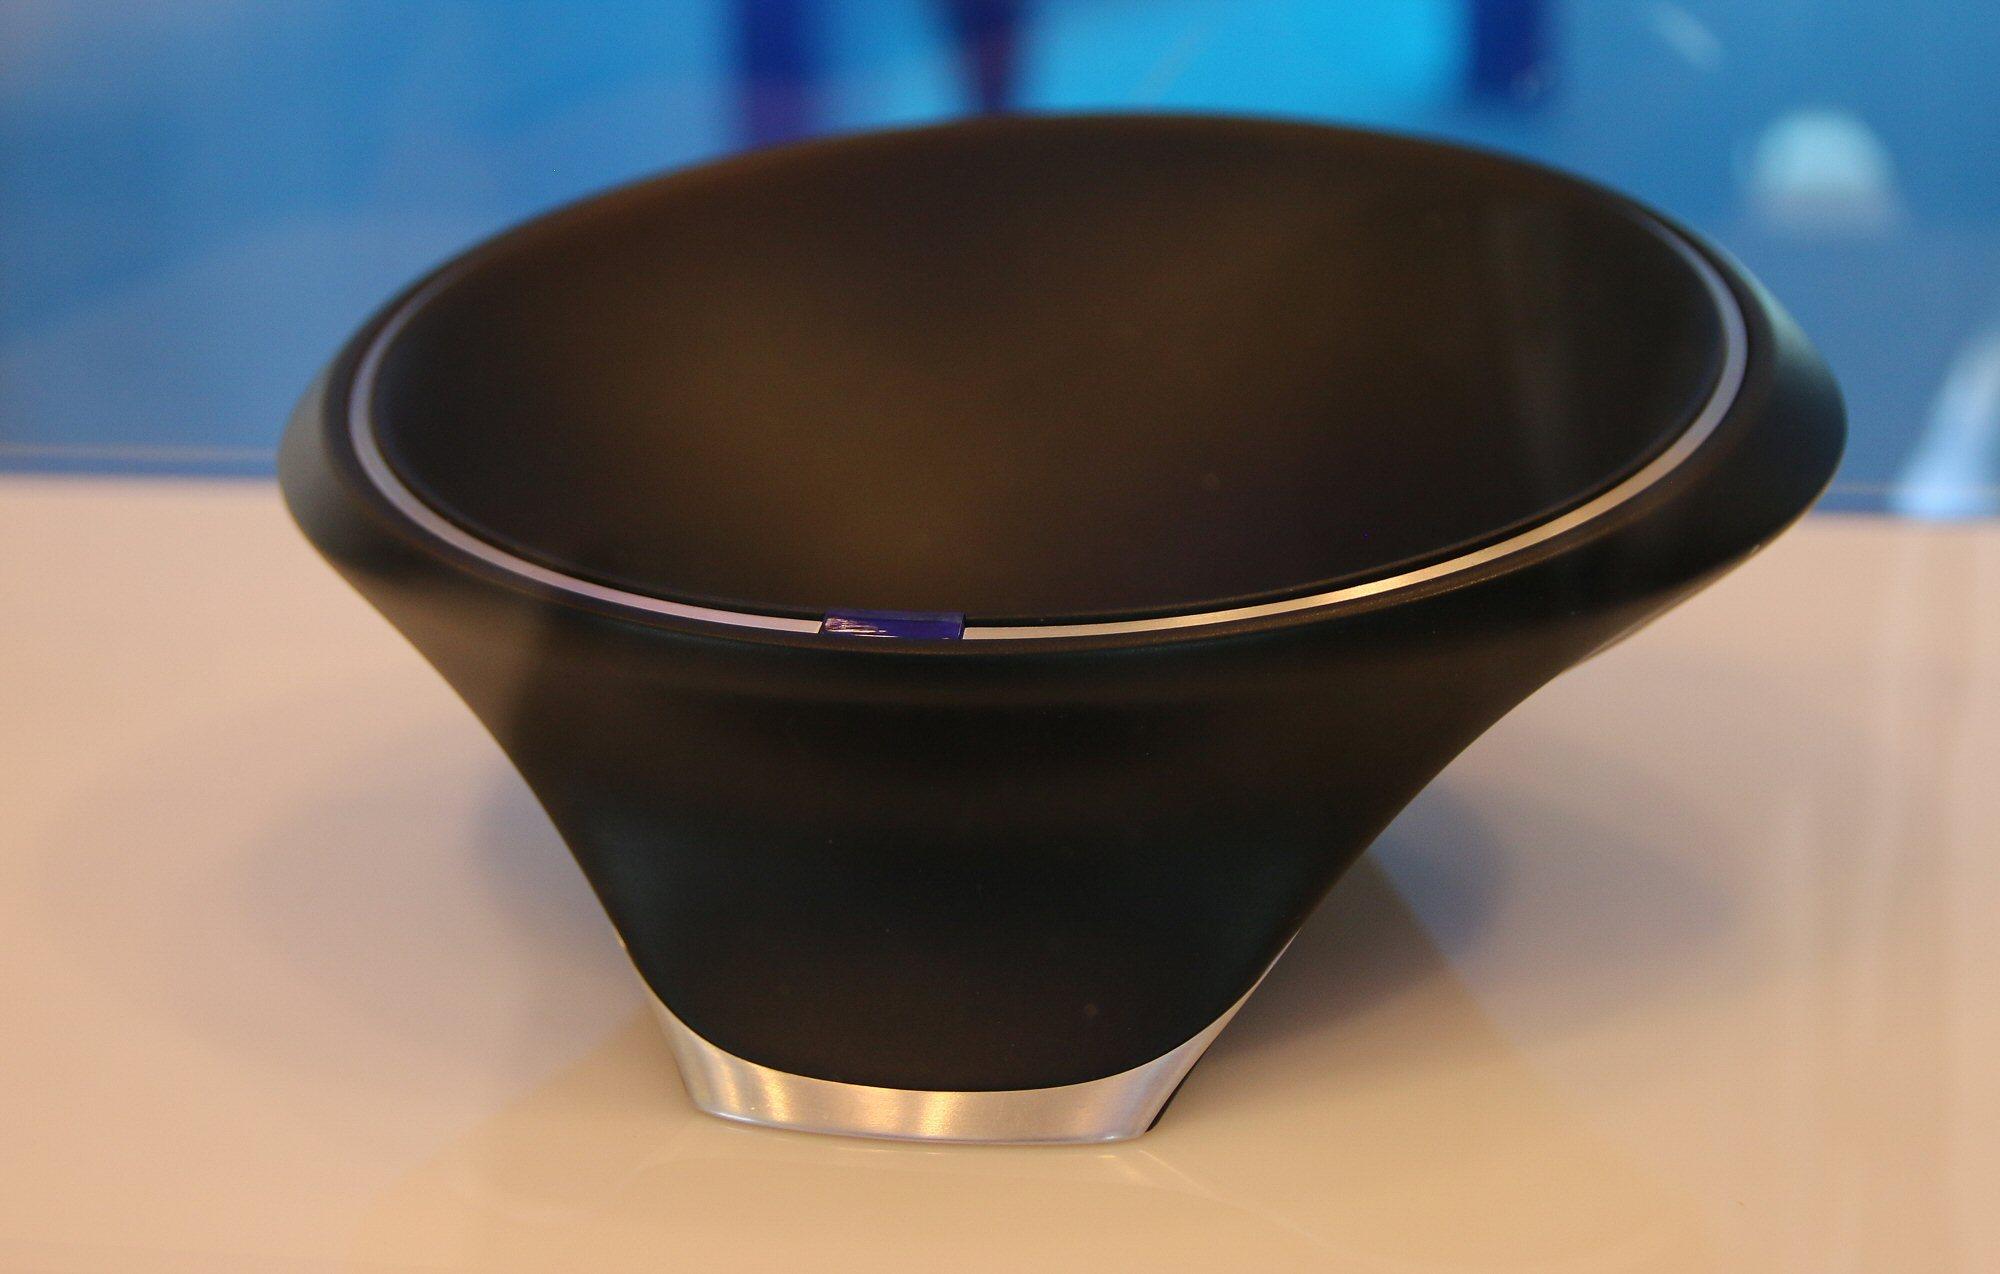 Intels «Wireless Charging Bowl» for fremtidige Rezence-enheter. Ja nettopp, en ladebolle.Foto: Vegar Jansen, Tek.no